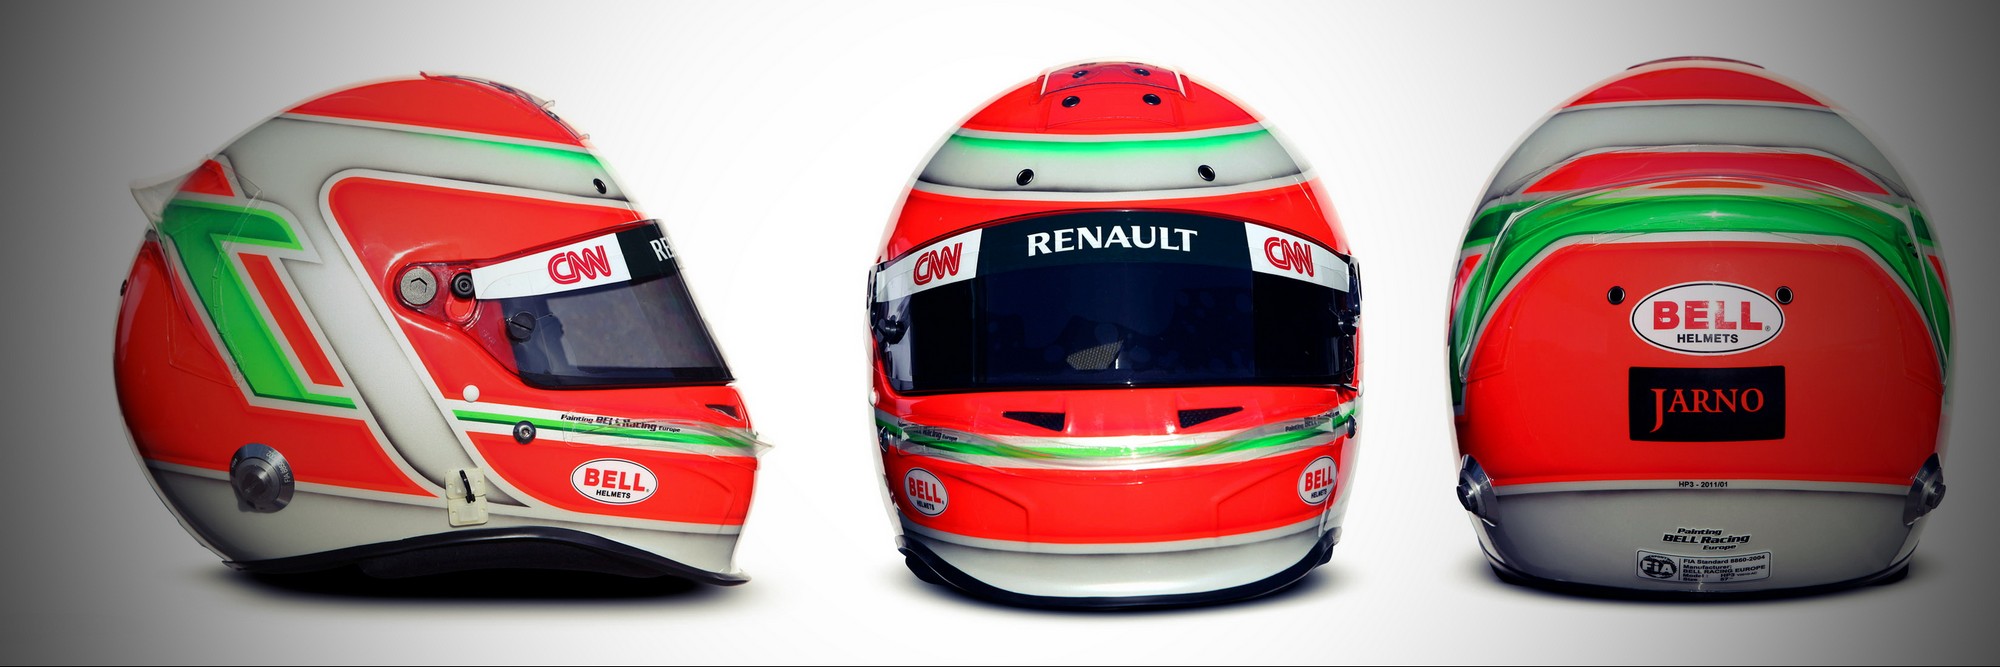 Шлем Ярно Трулли на сезон 2011 года | 2011 helmet of Jarno Trulli